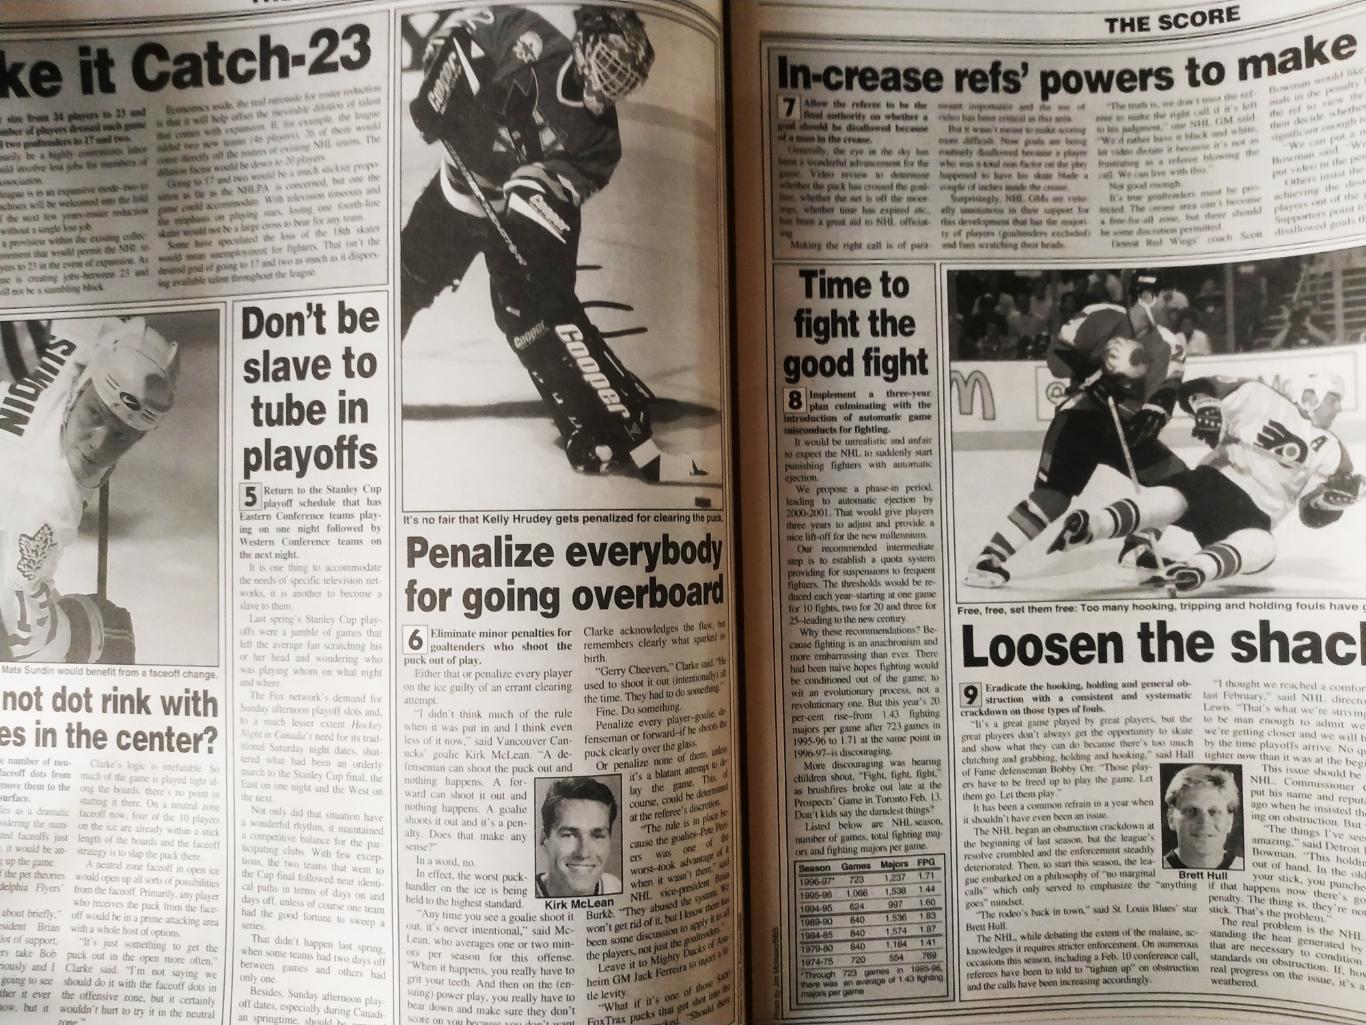 ХОККЕЙ ЖУРНАЛ ЕЖЕНЕДЕЛЬНИК НХЛ НОВОСТИ ХОККЕЯ NHL MAR.7 1997 THE HOCKEY NEWS 2